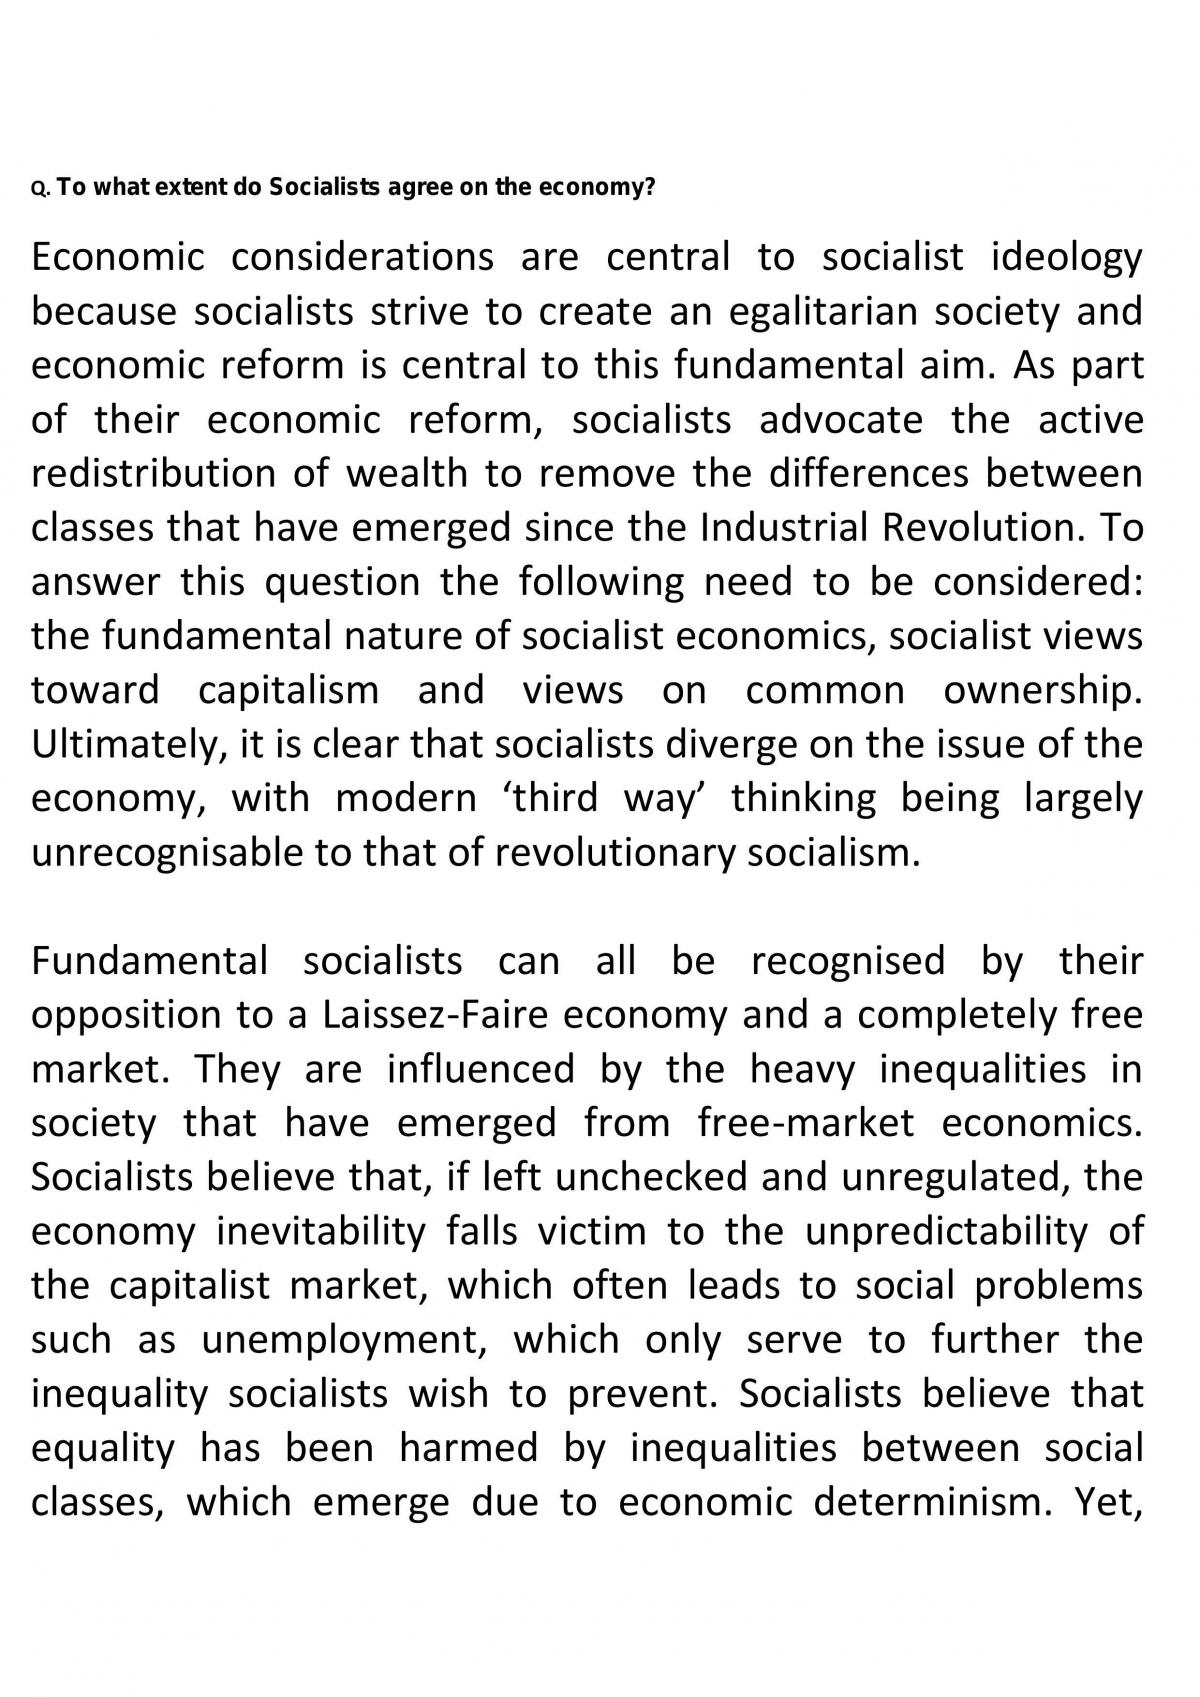 socialism essay a level politics